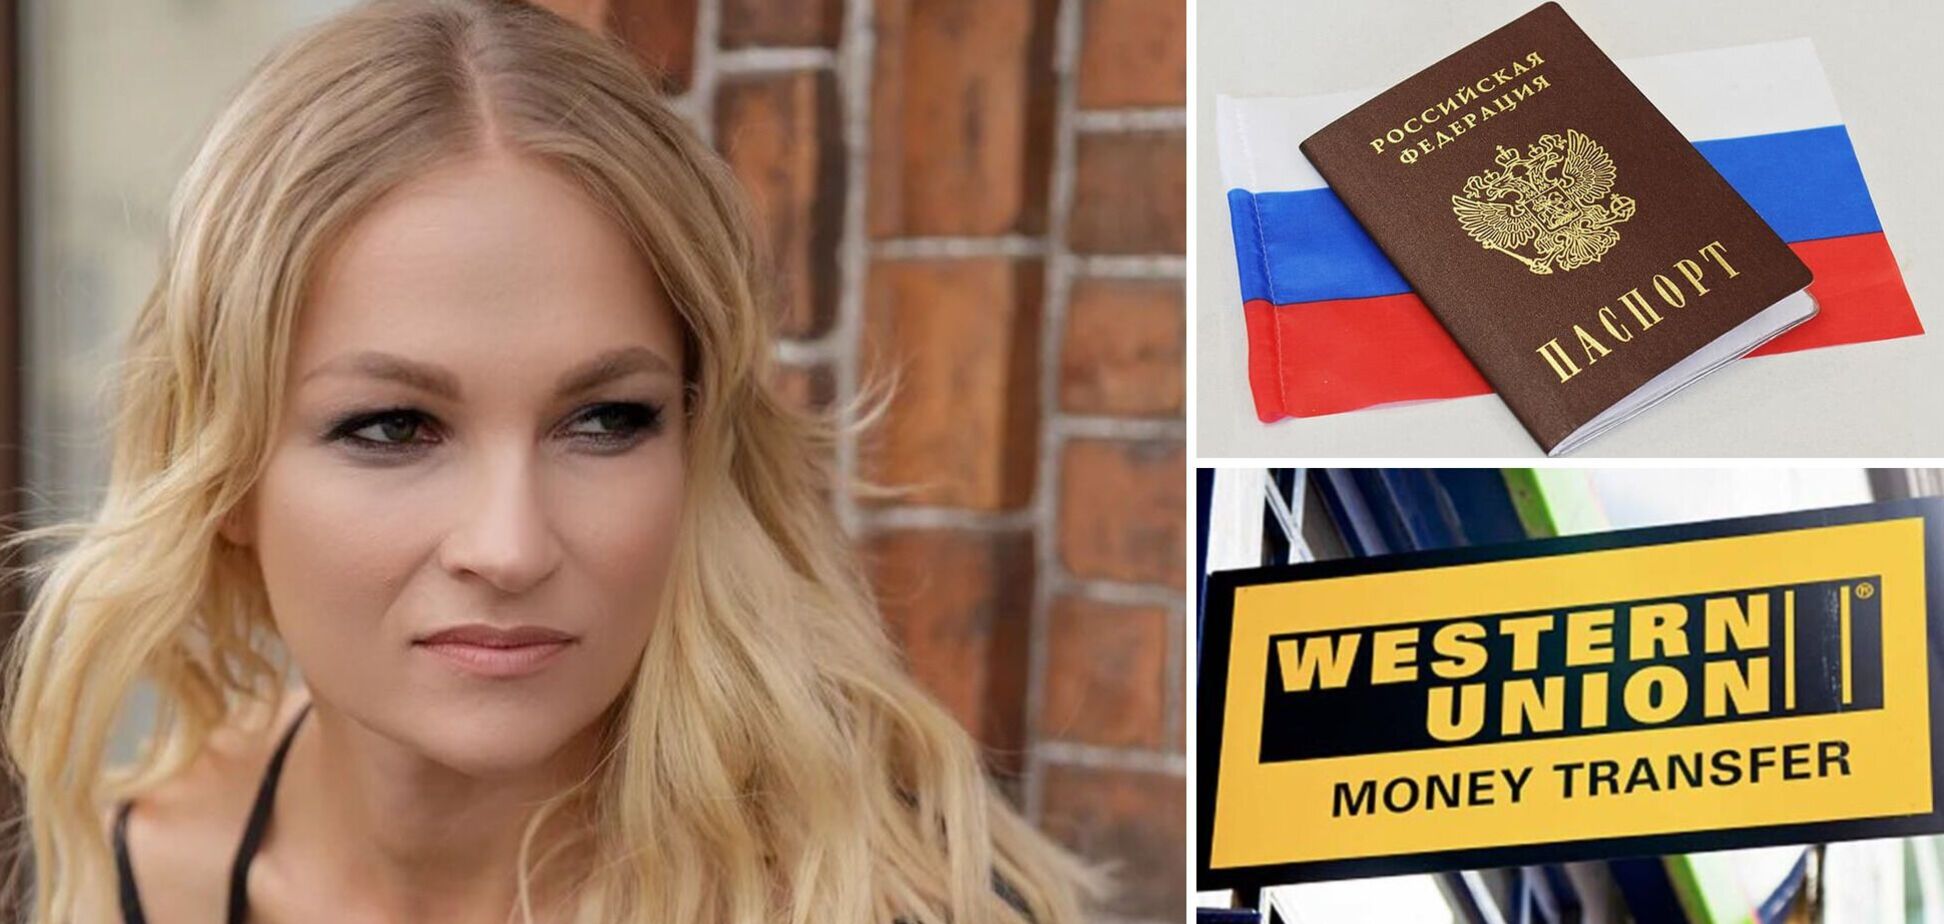 Российская блогерша в Мексике не смогла получить перевод Western Union: ее паспорт 'забраковали'